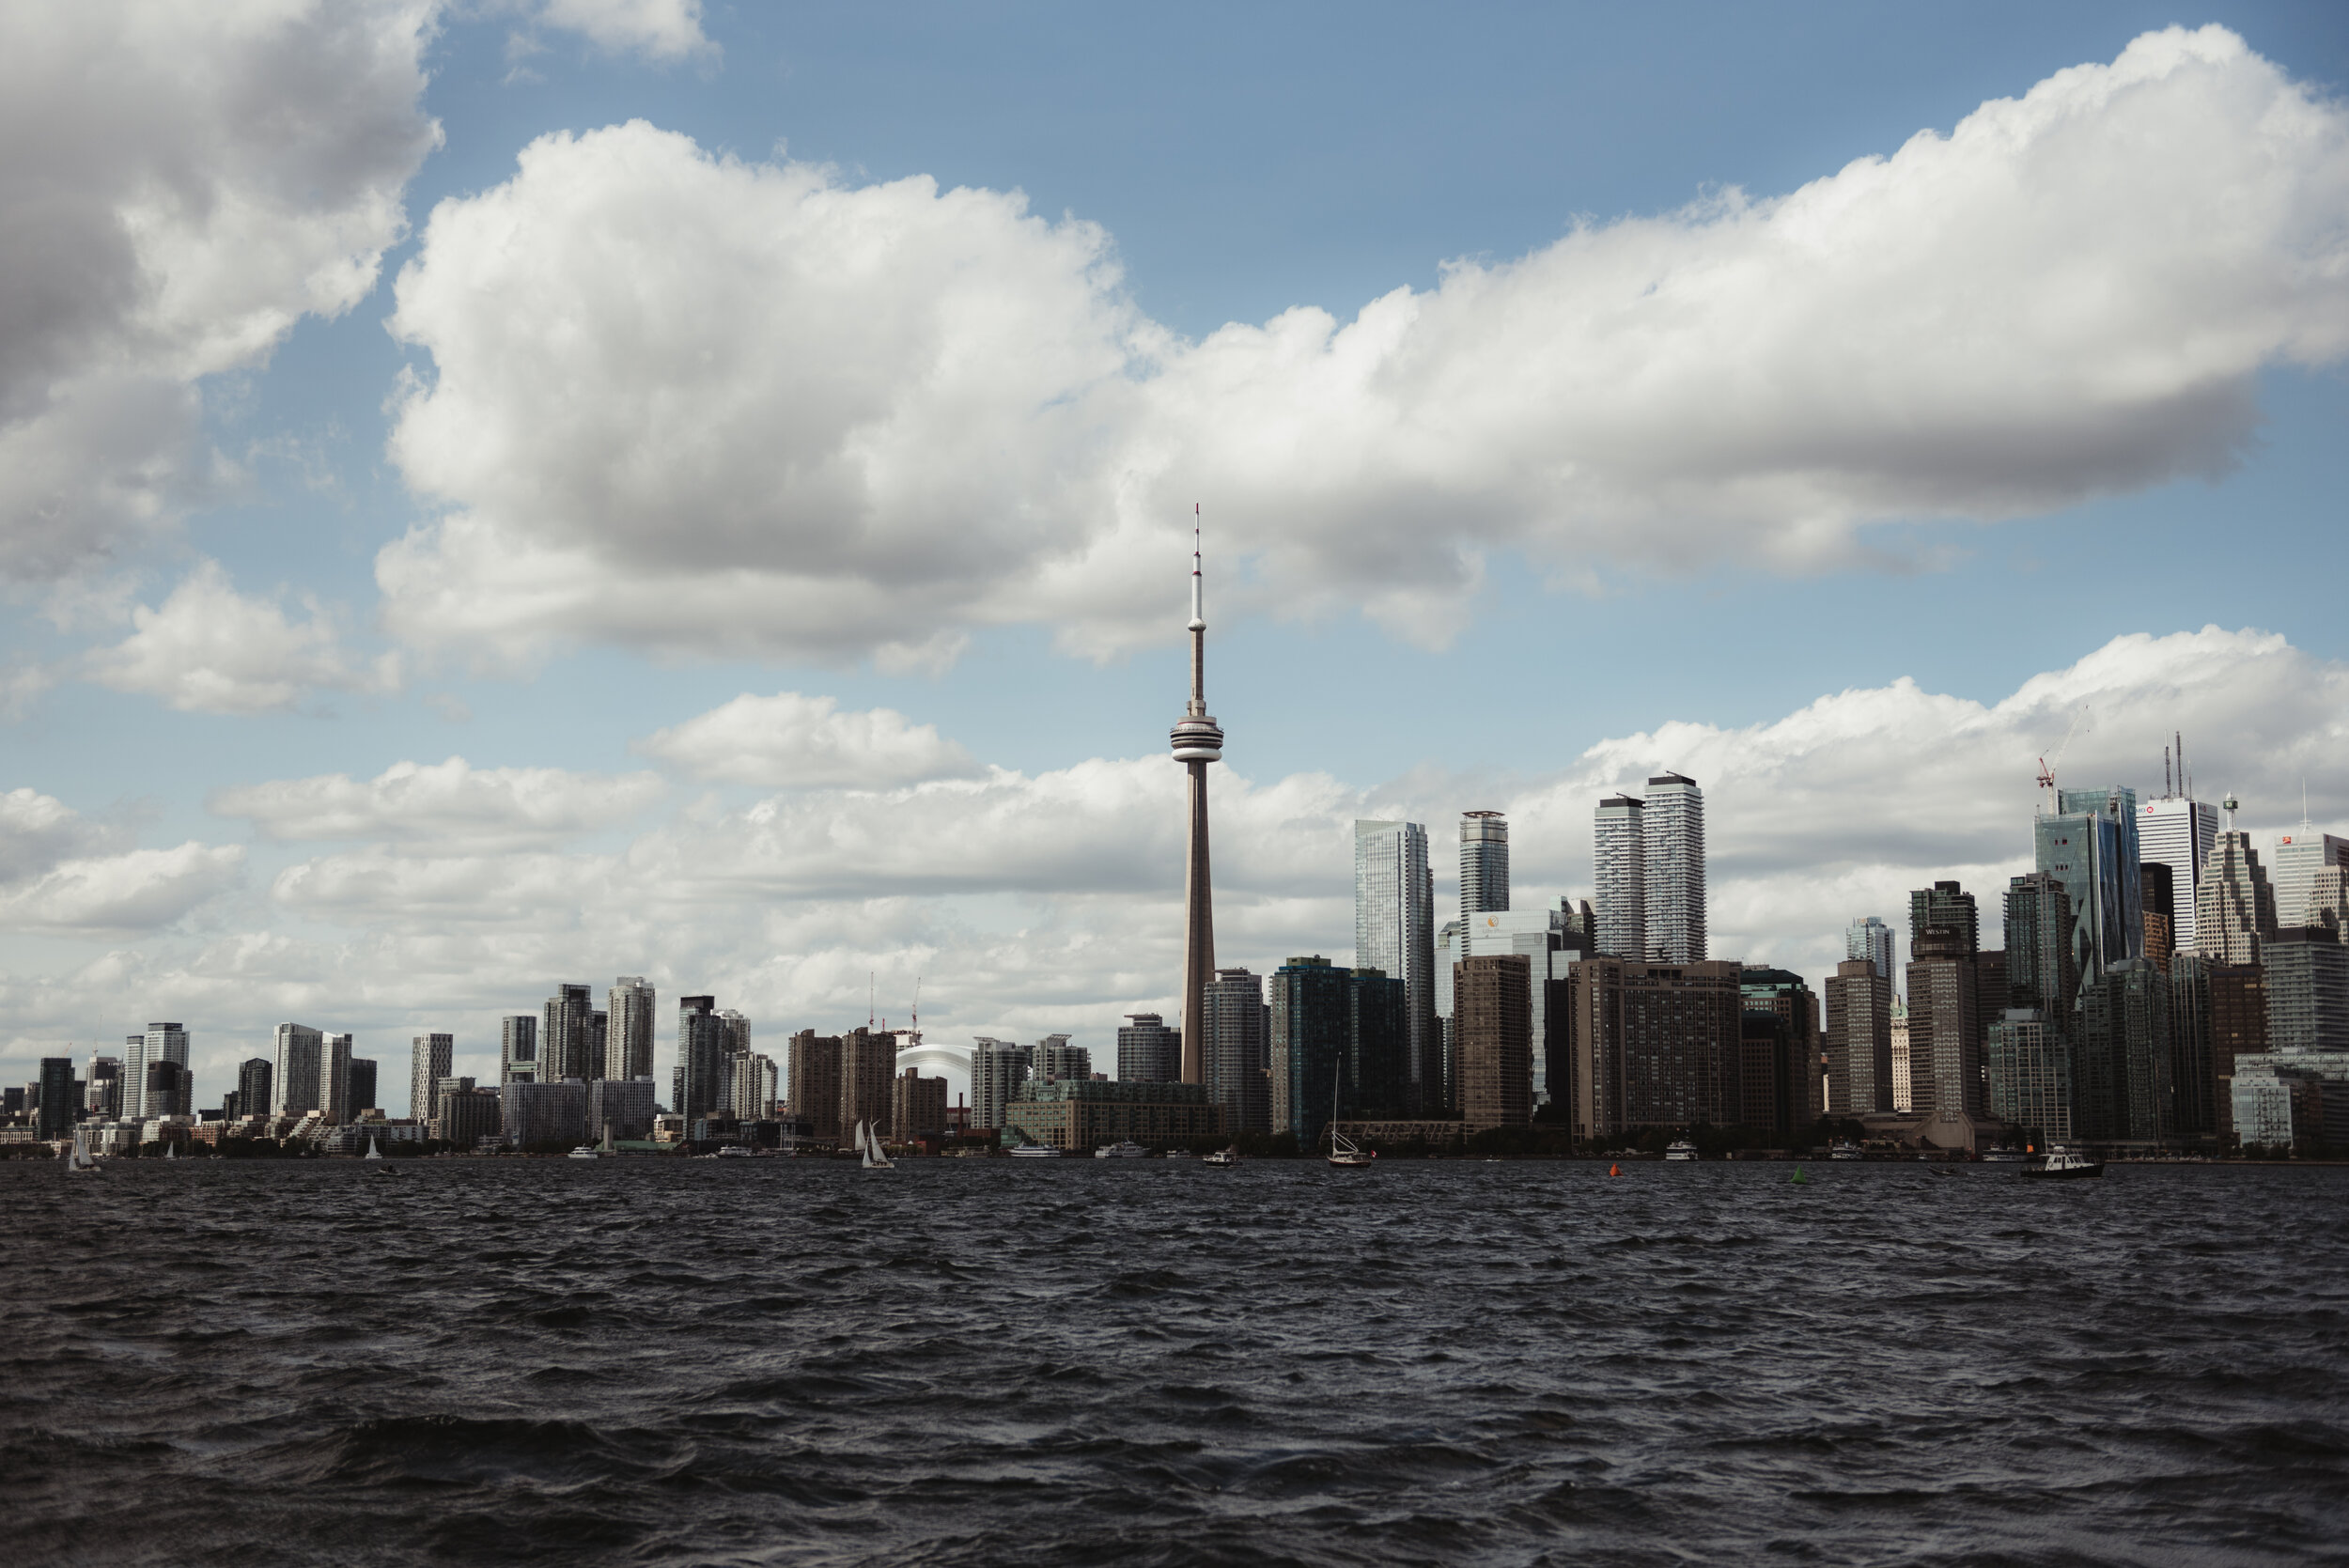 Toronto city skyline